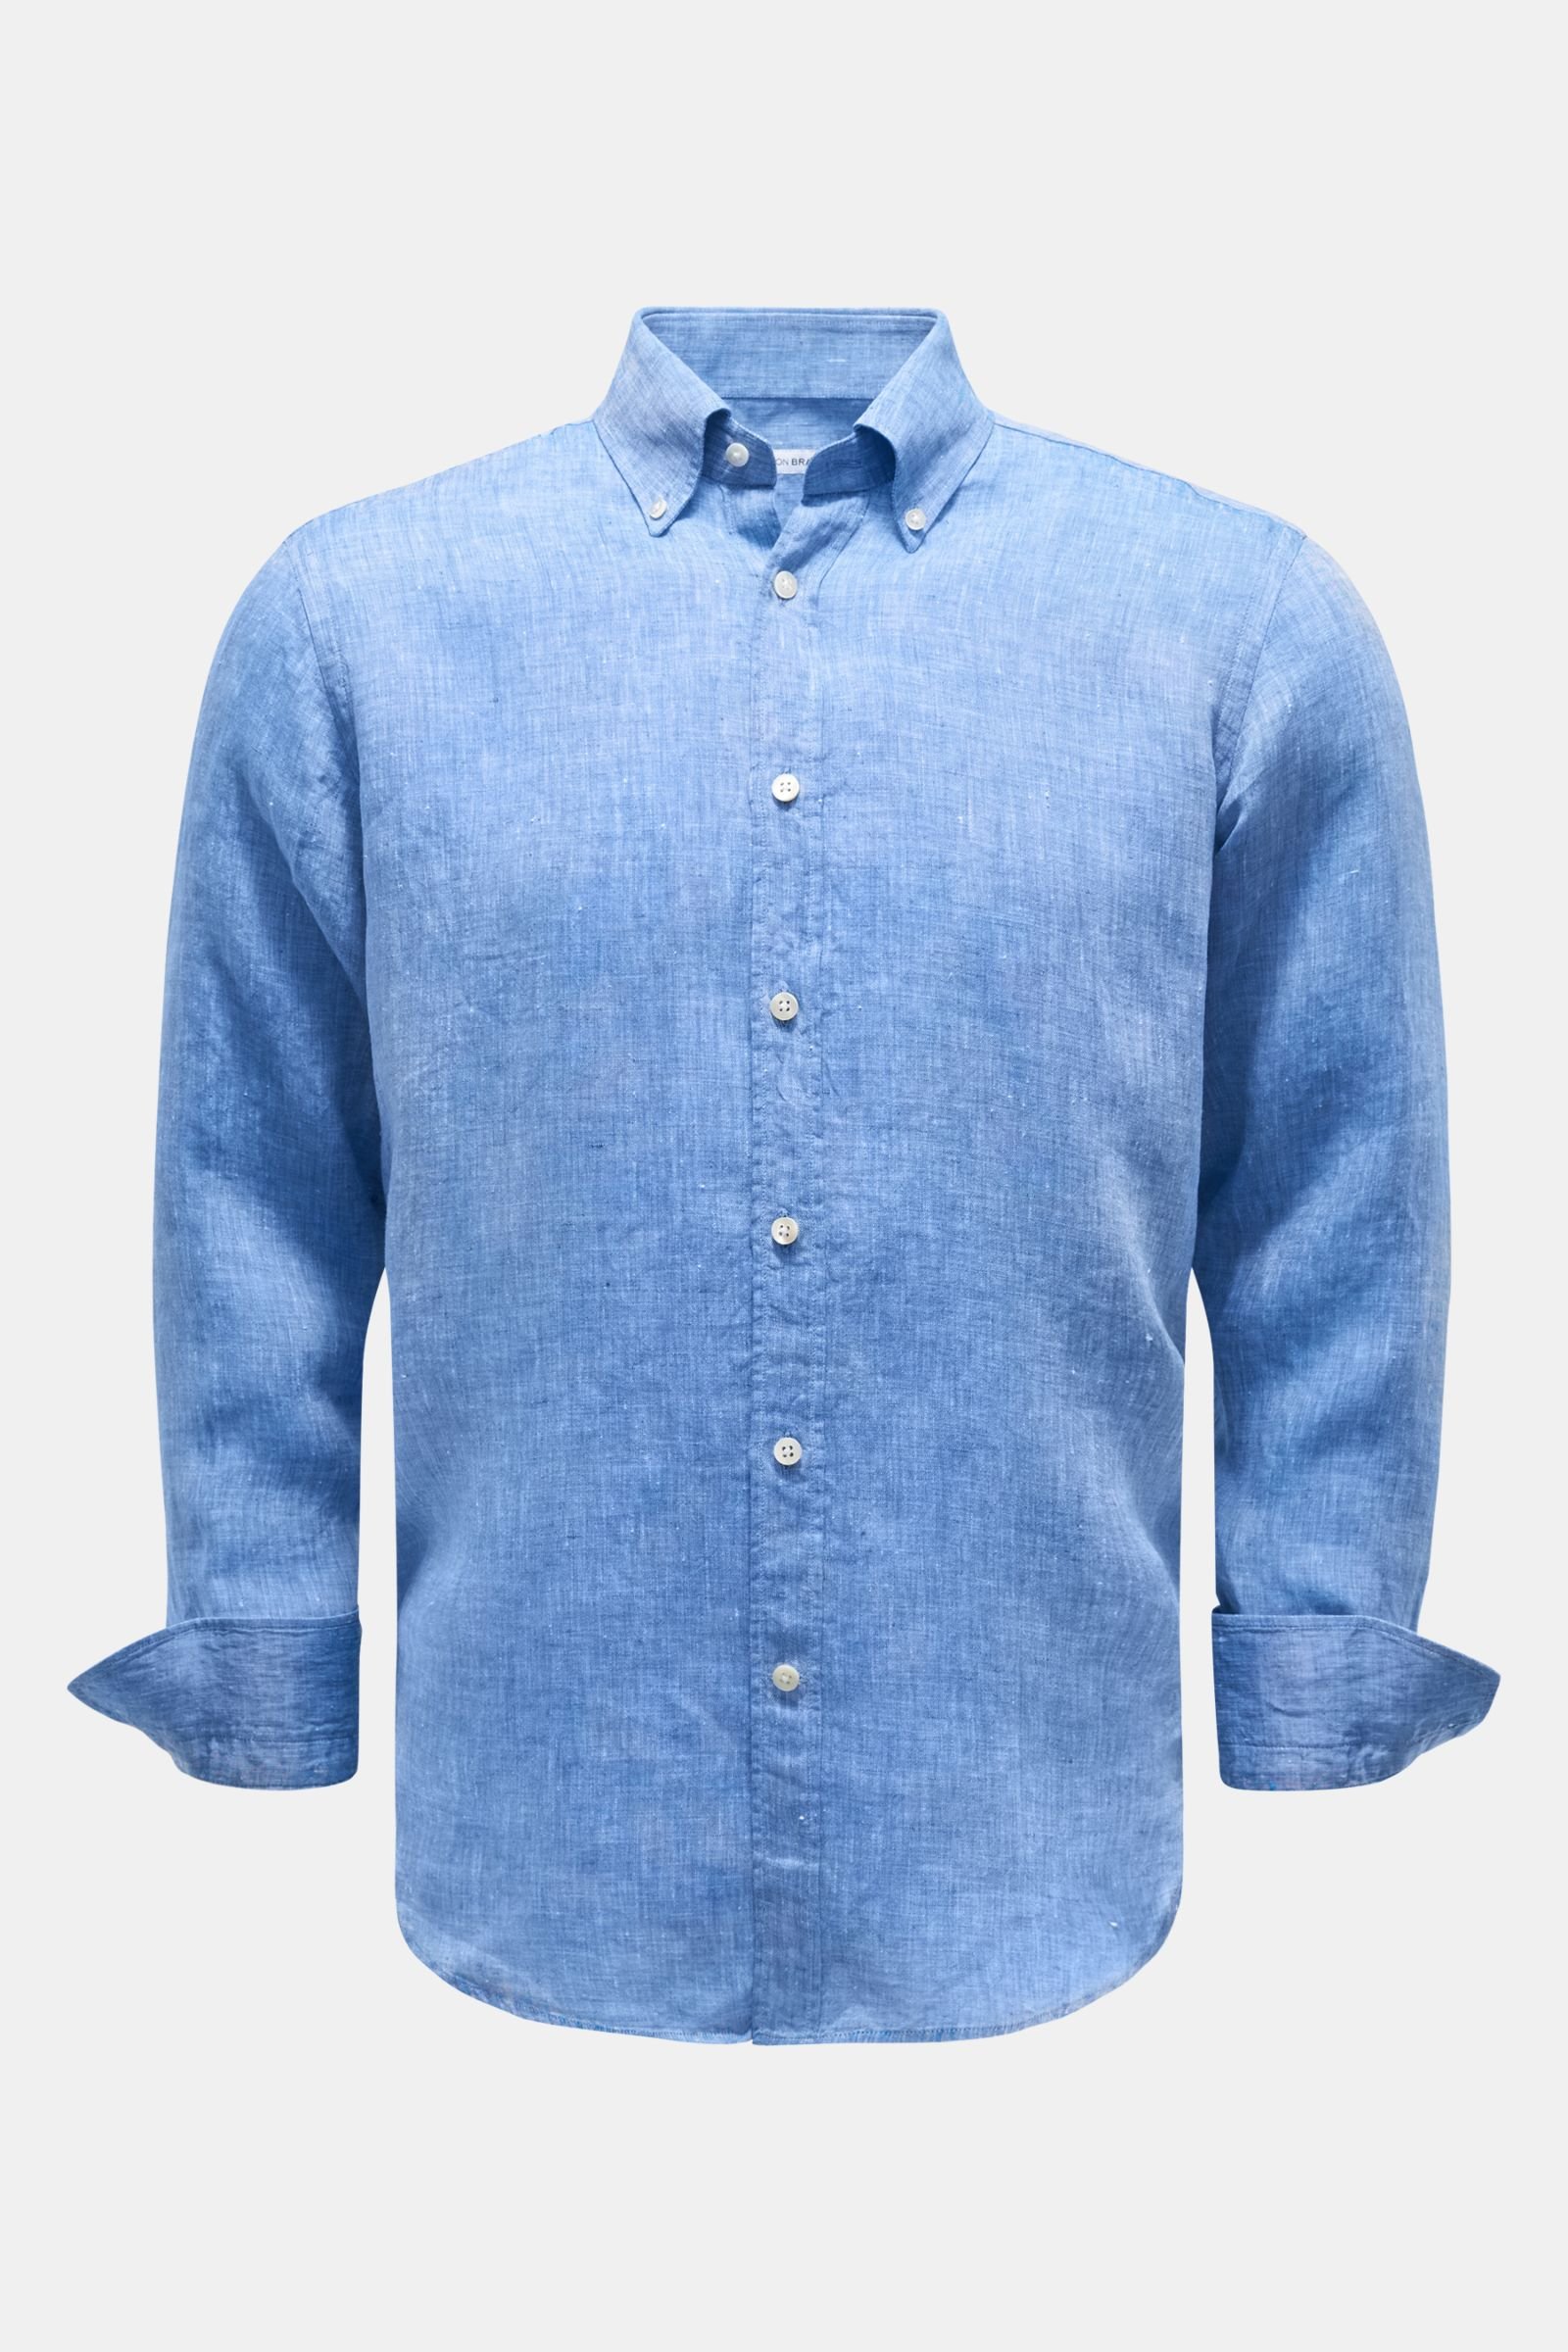 Linen shirt button-down collar grey-blue